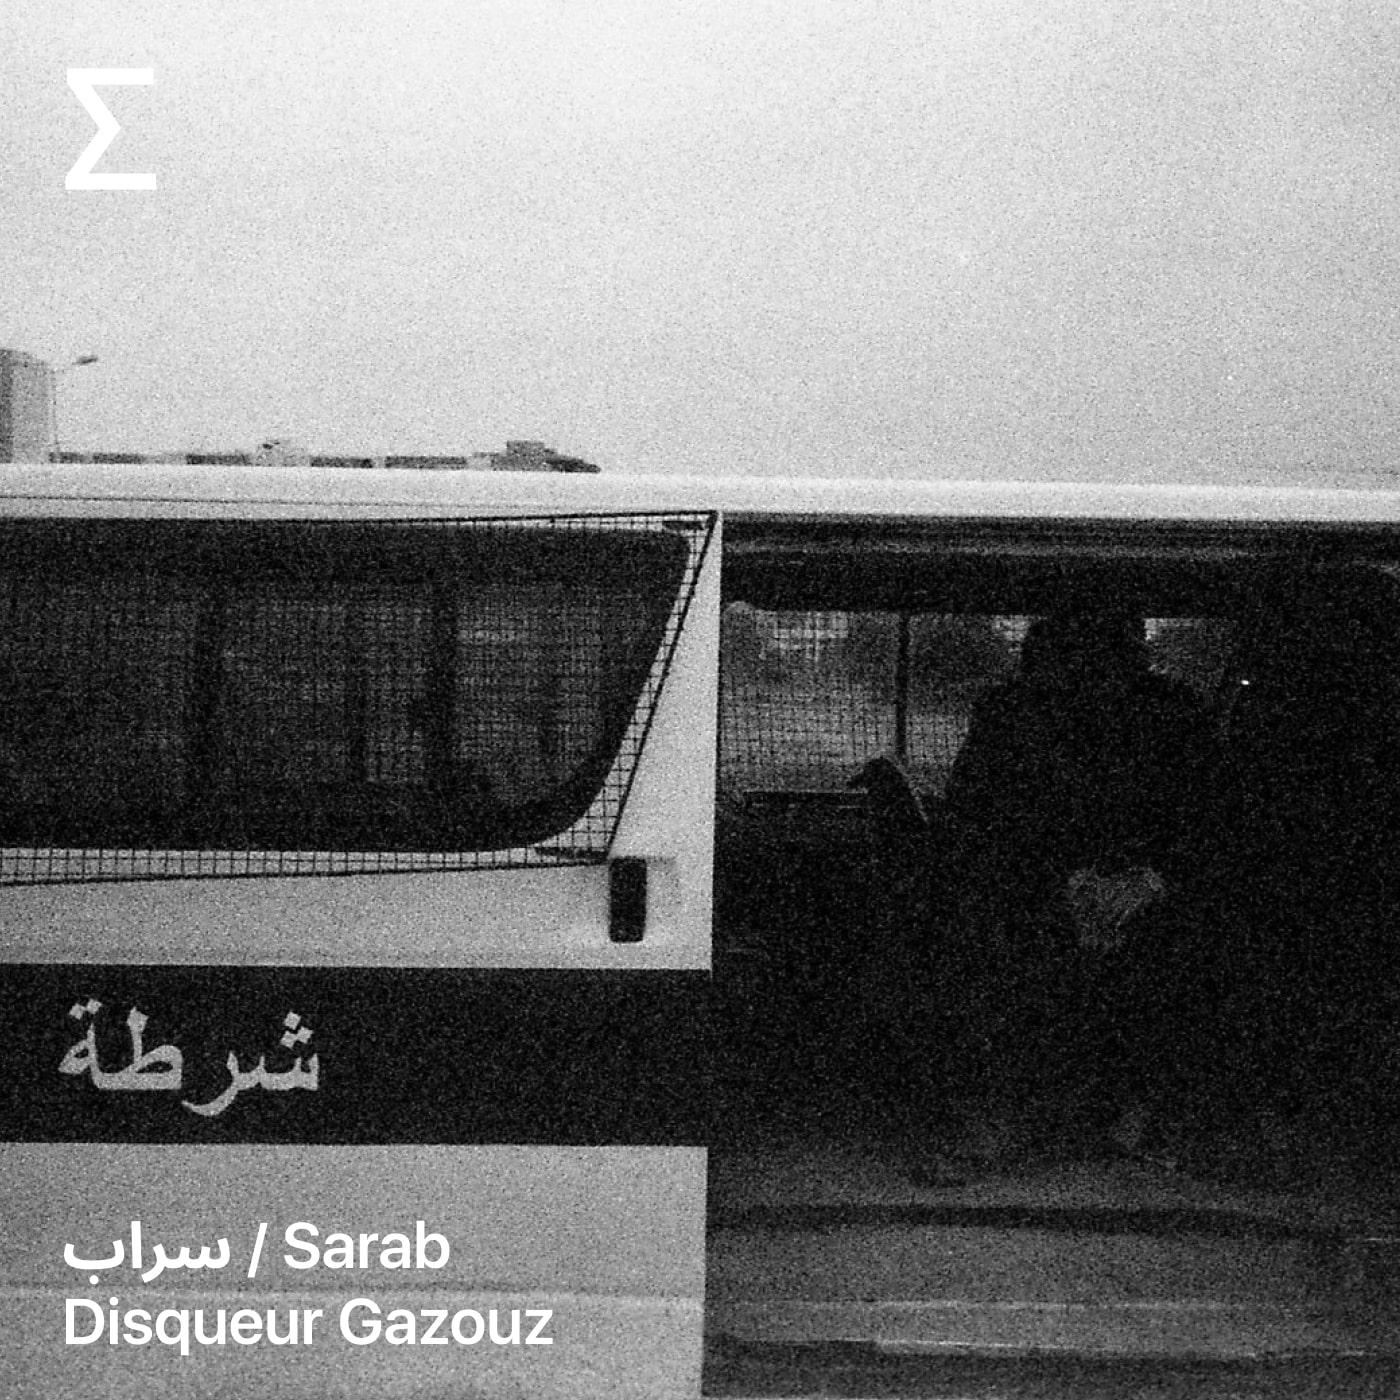 سراب / Sarab – Disqueur Gazouz